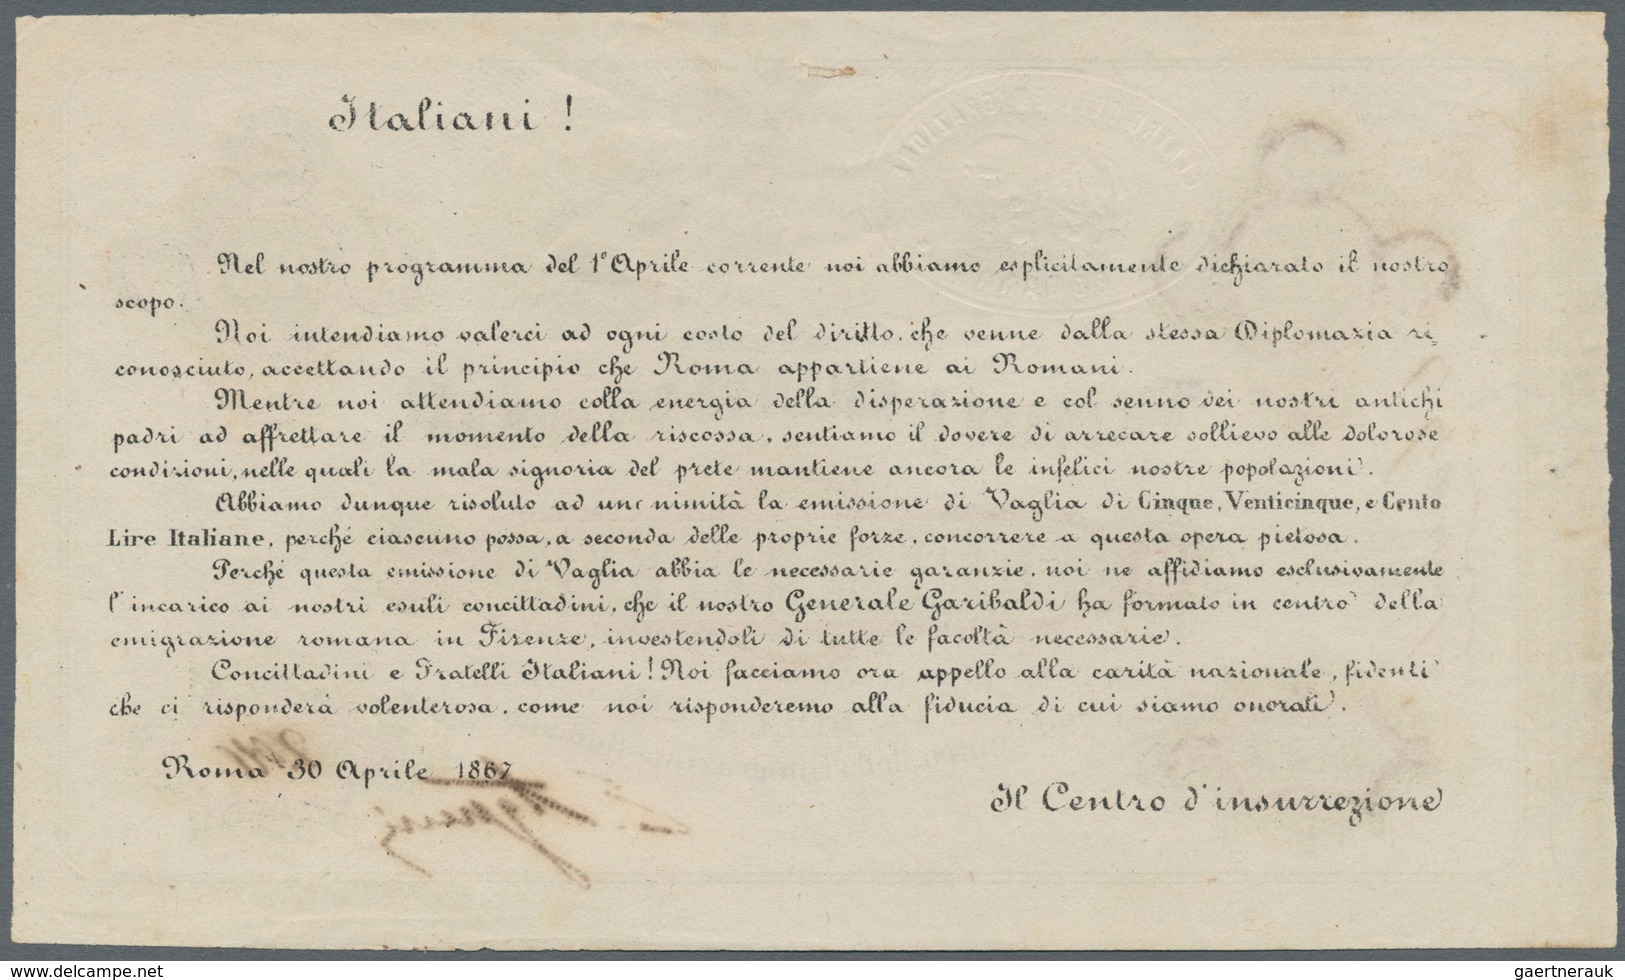 Italy / Italien: Soccorso A Sollievo Dei Romani 100 Lire ND(1867) P. NL, Crisp Original Without Dama - Otros & Sin Clasificación